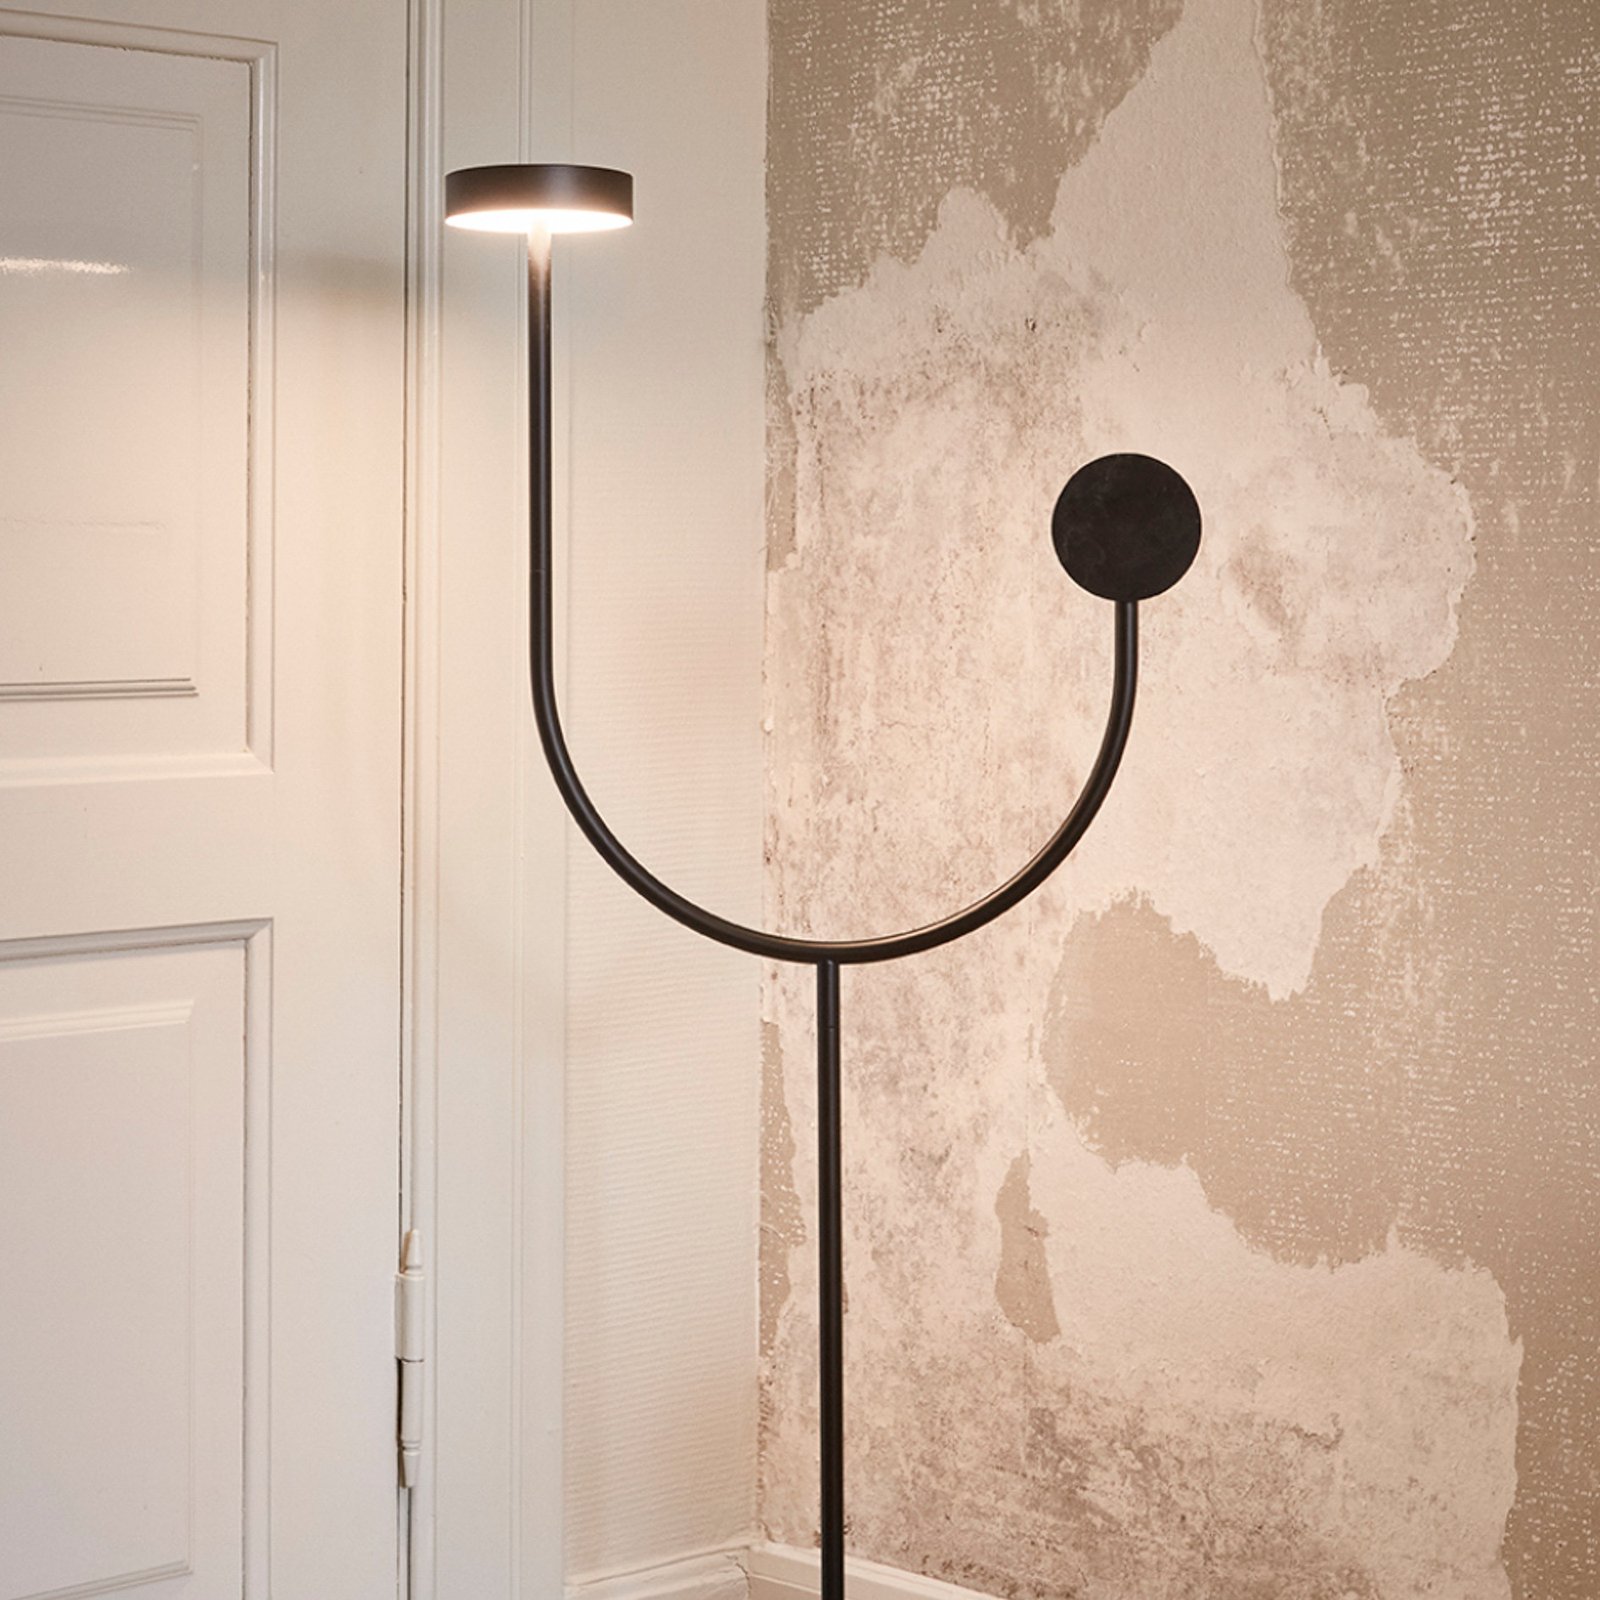 AYTM LED stojací lampa Grasil, černá, mramor, výška 127 cm